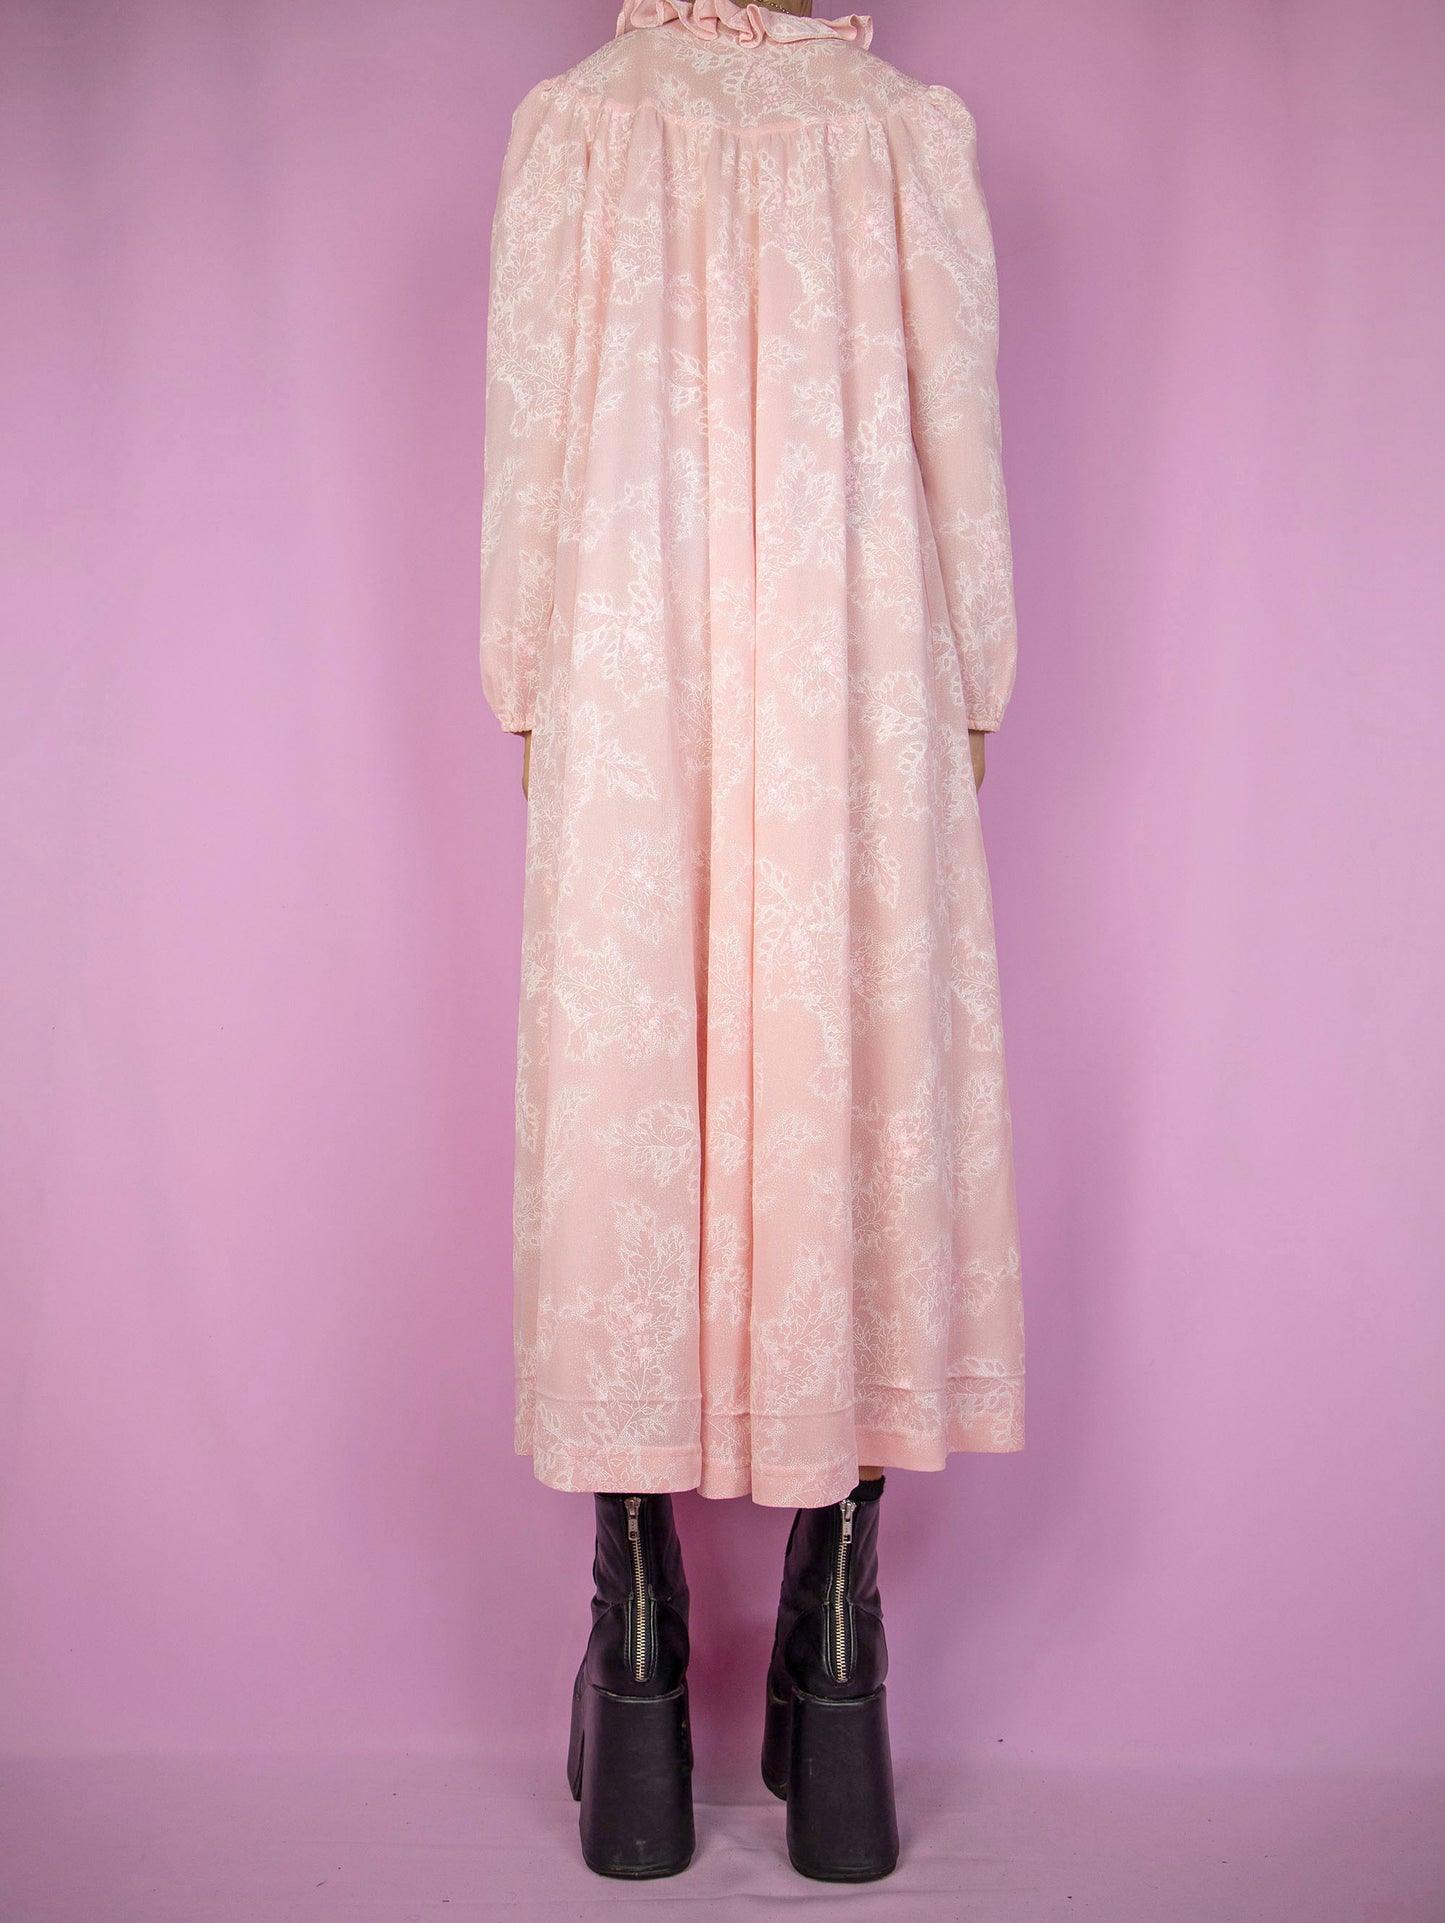 Vintage 90s Pink Nightgown Dress - L/XL